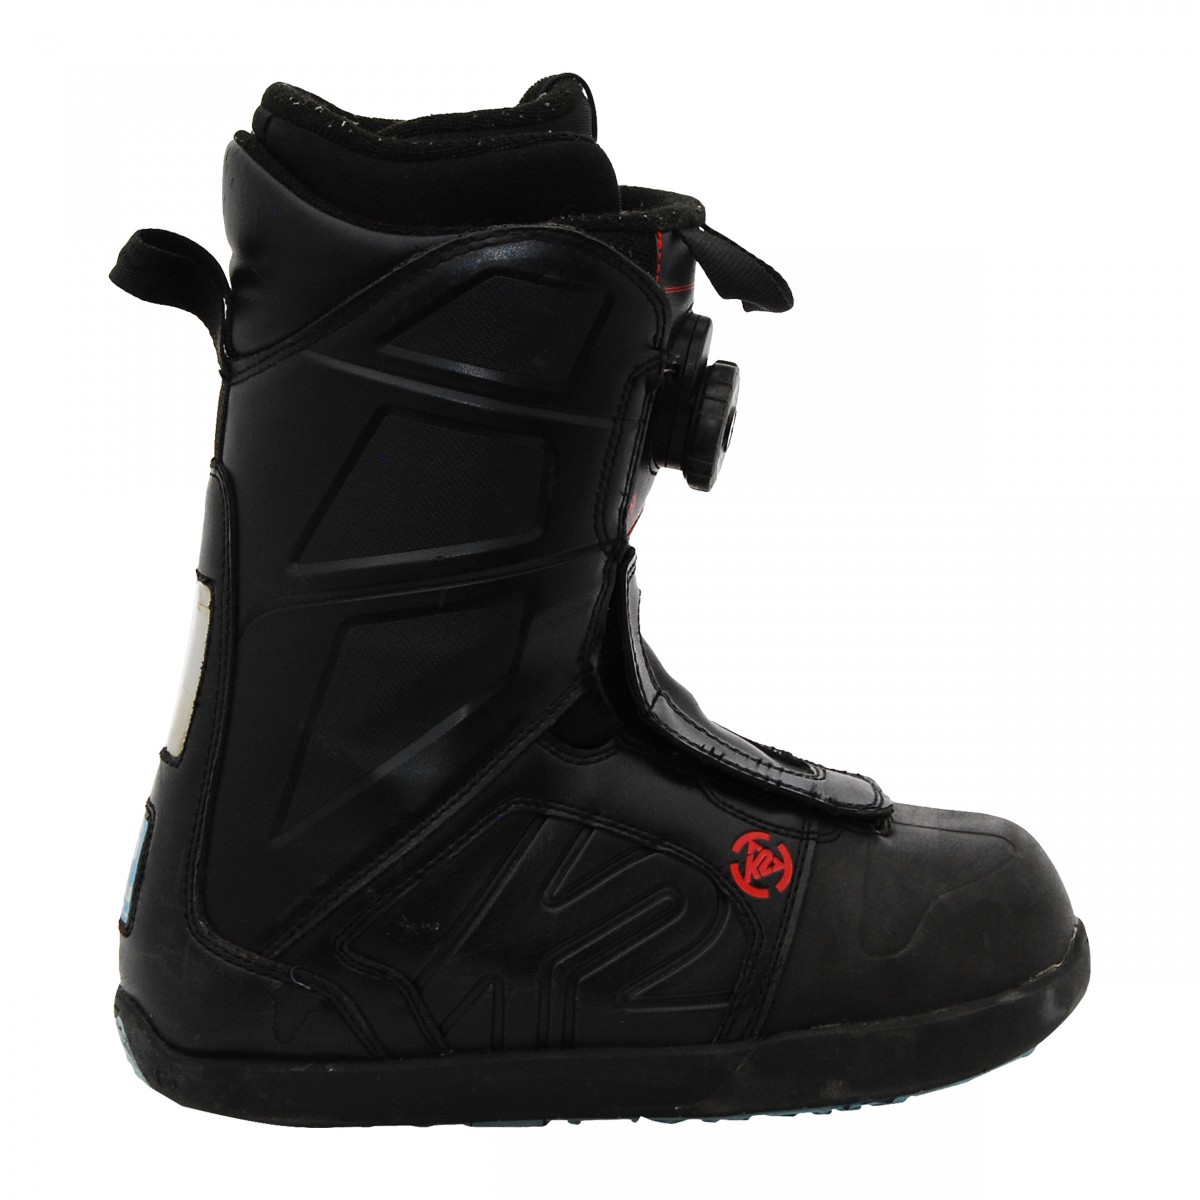 K2 used boots raider/vandal black